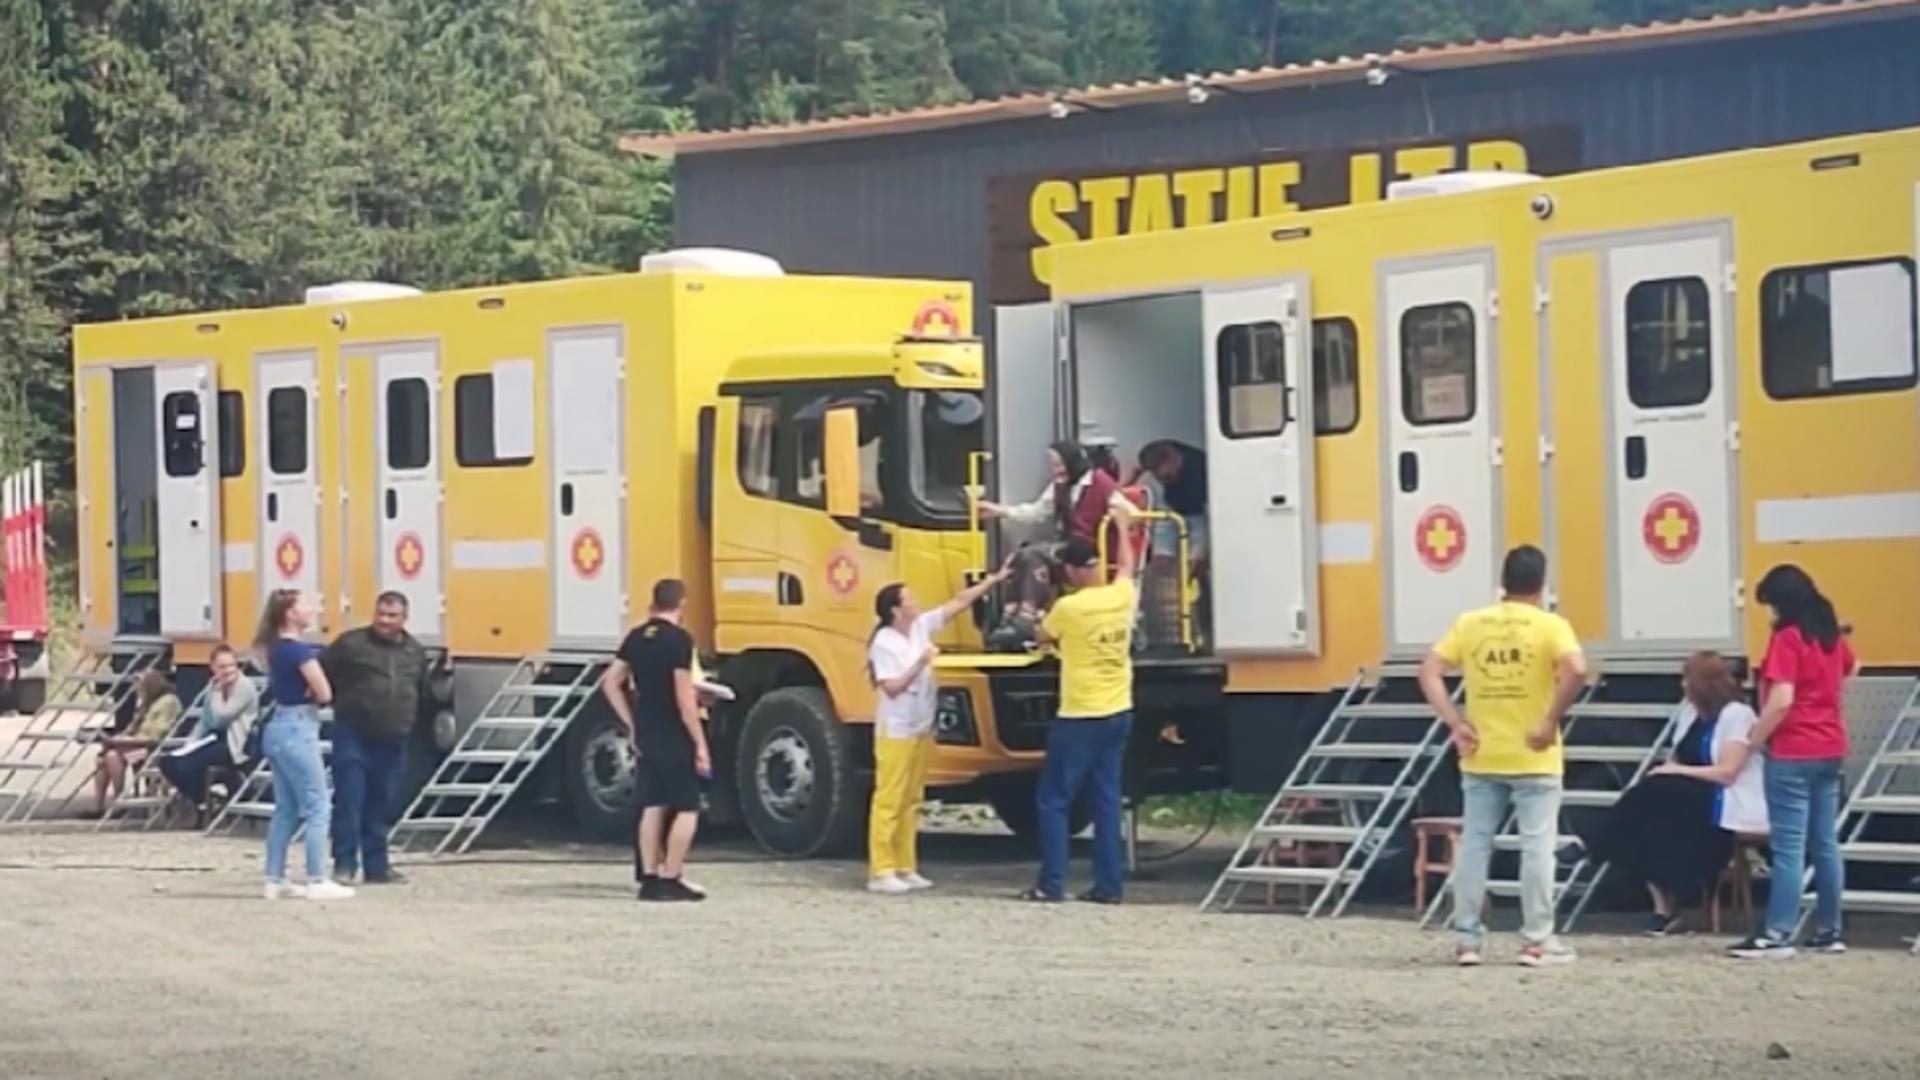 Consultații gratuite pentru mii de români prin intermediul Spitalului mobil AUR și Caravanei România Suverană